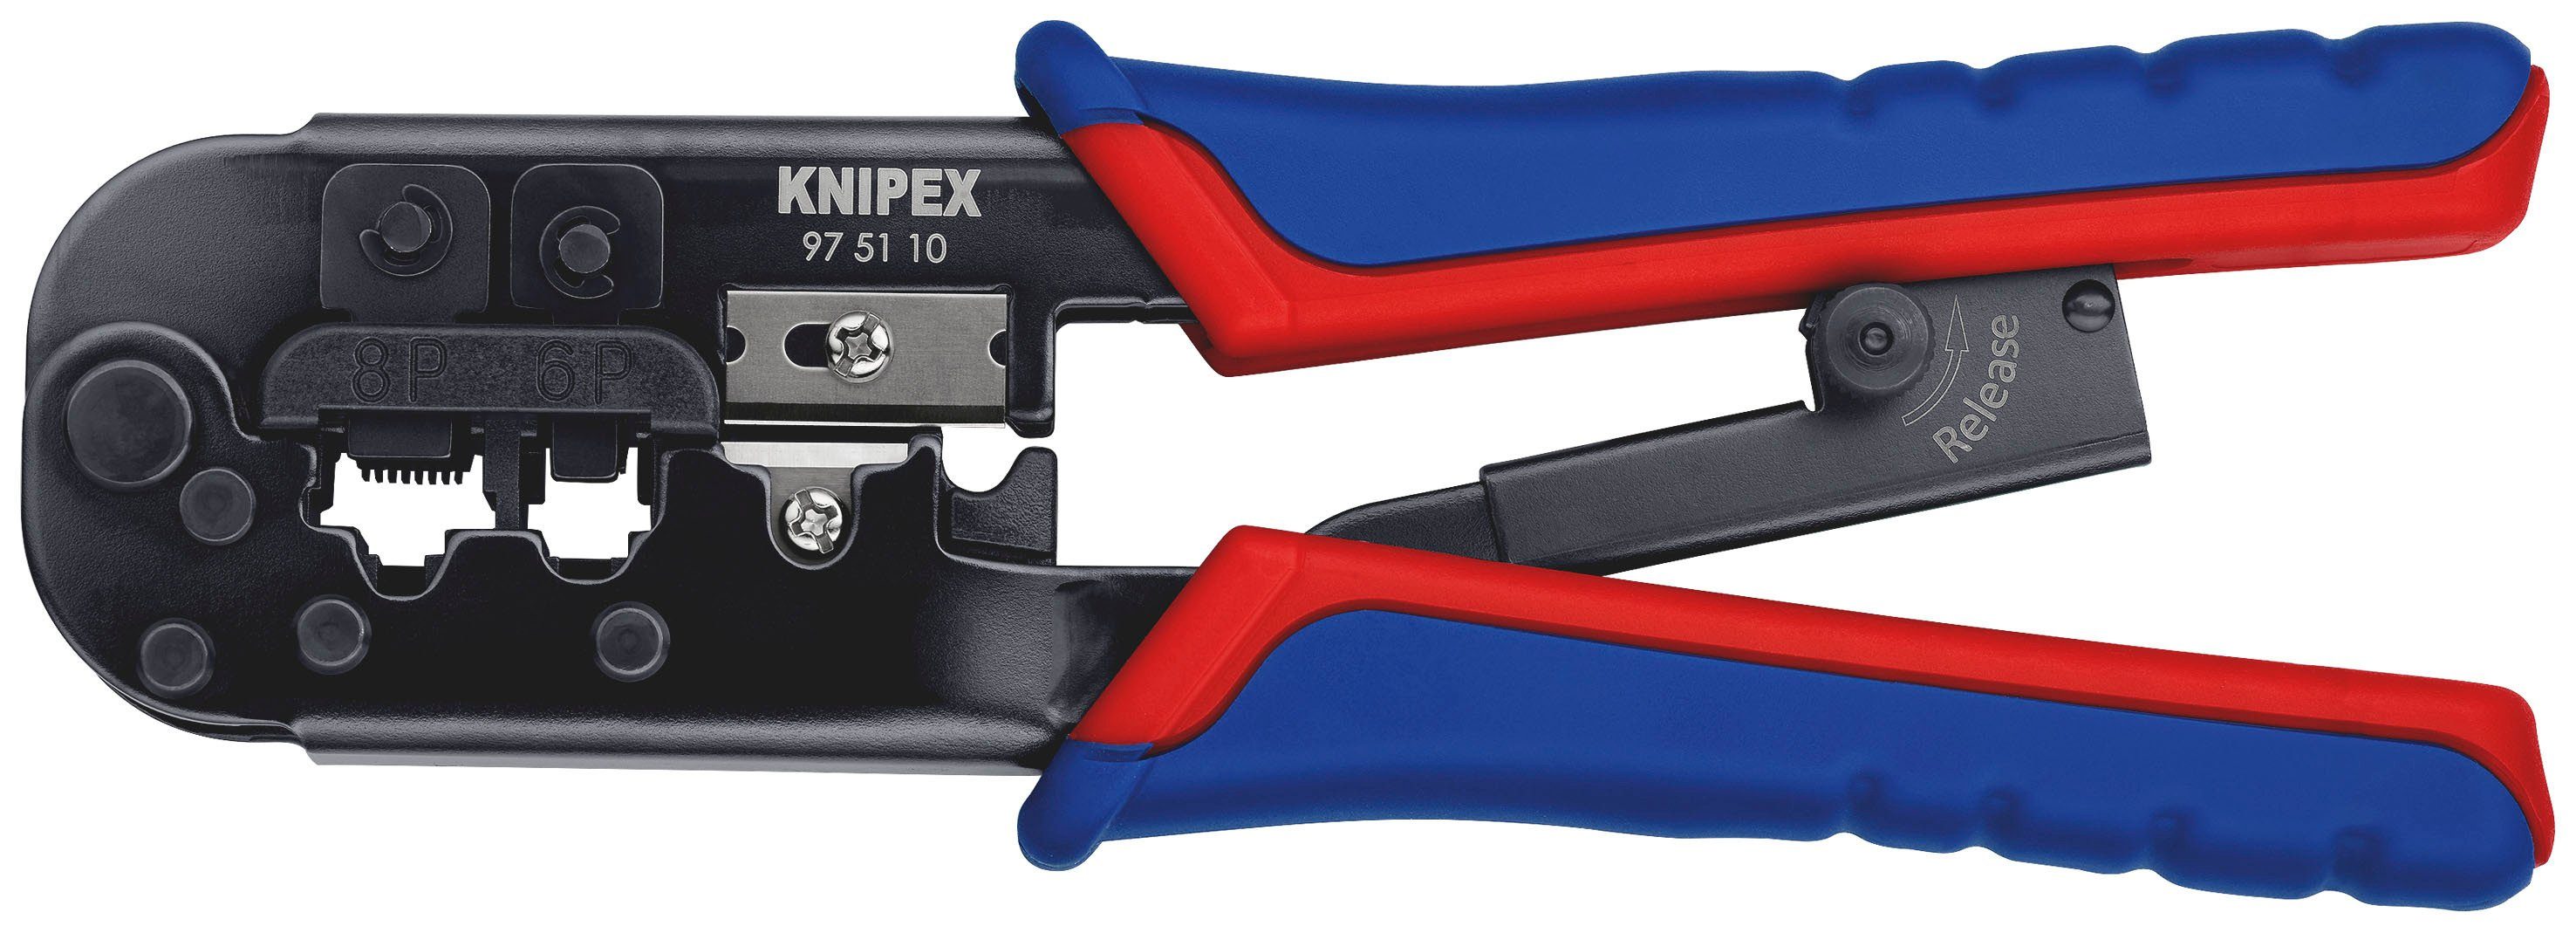 Knipex Crimpzange 97 51 10 für Westernstecker, 1-tlg., brüniert, mit Mehrkomponenten-Hüllen 190 mm